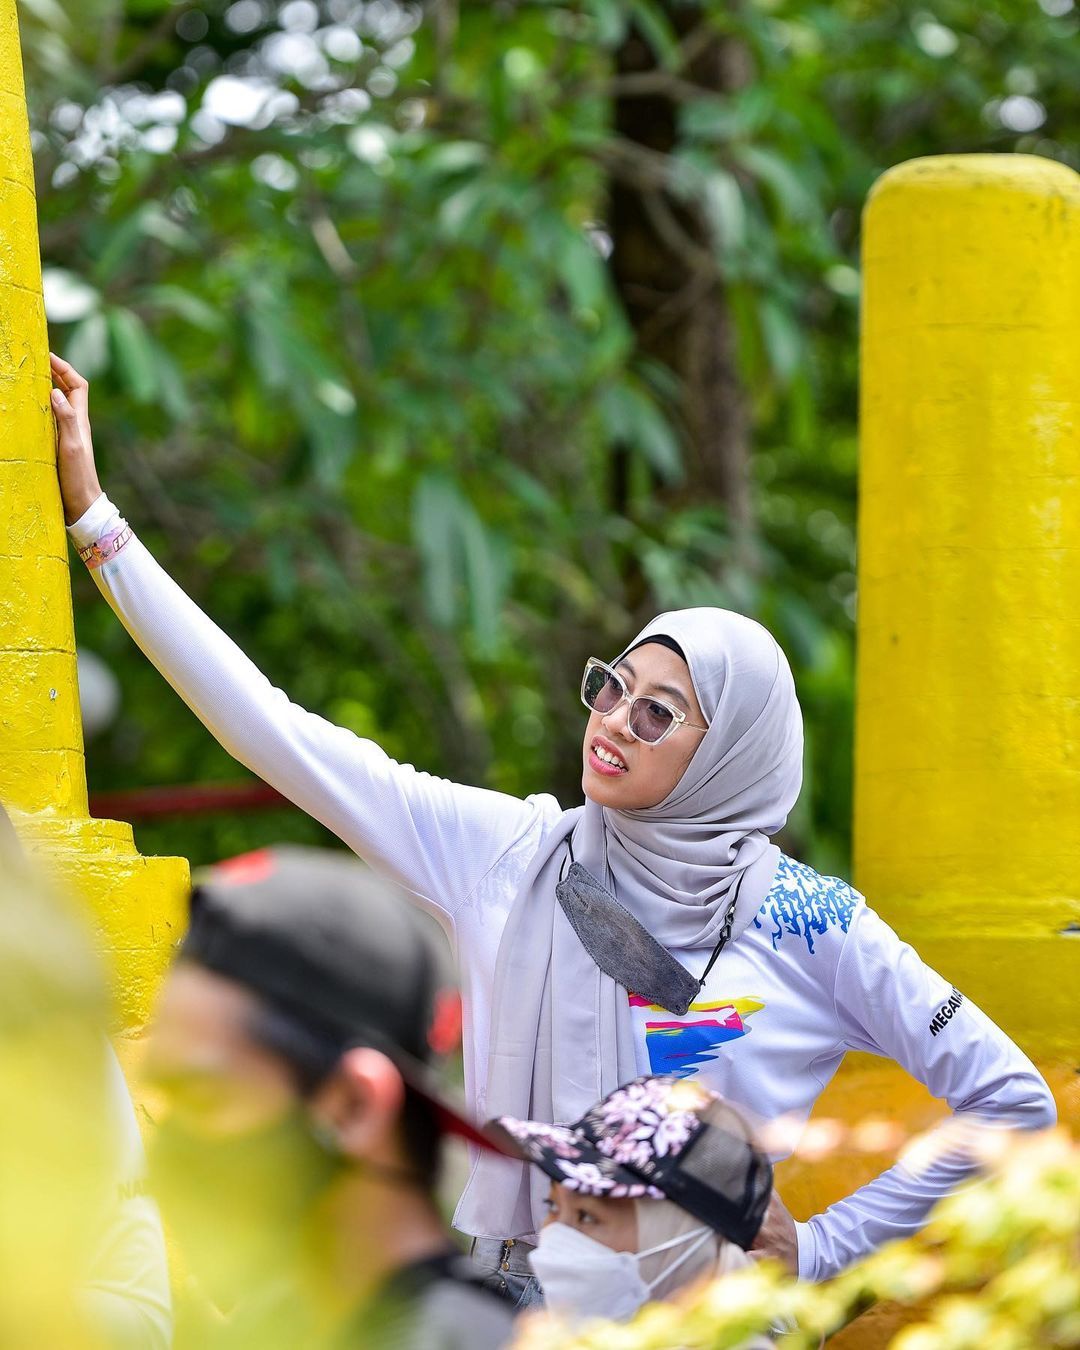 Megawati Hangestri, atlet voli putri yang menempati posisi opposite. Pemain andalan Jakarta Pertamina Fastron di Proliga 2022.